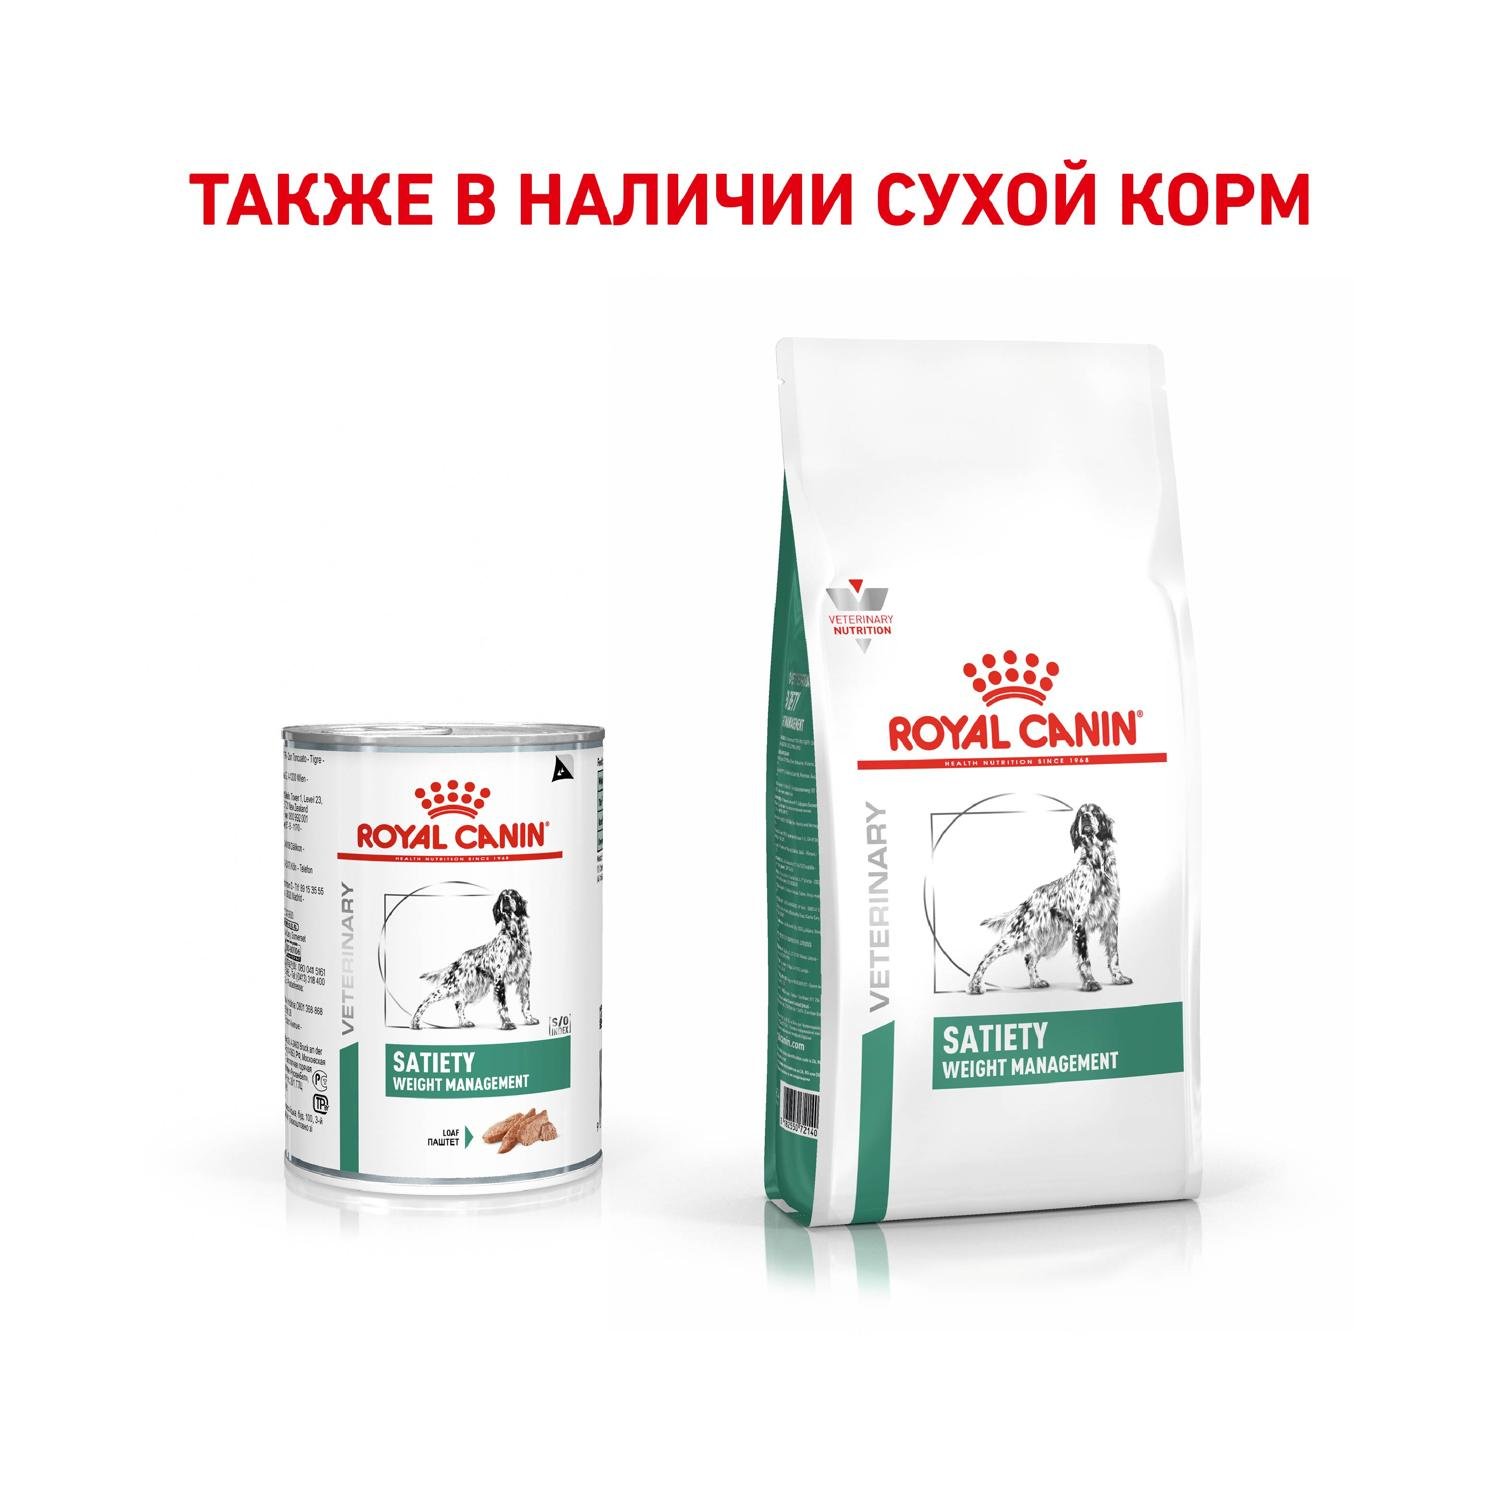 Корм для собак ROYAL CANIN Satiety weignt management 30 контроль веса консервированный 0.41кг - фото 4